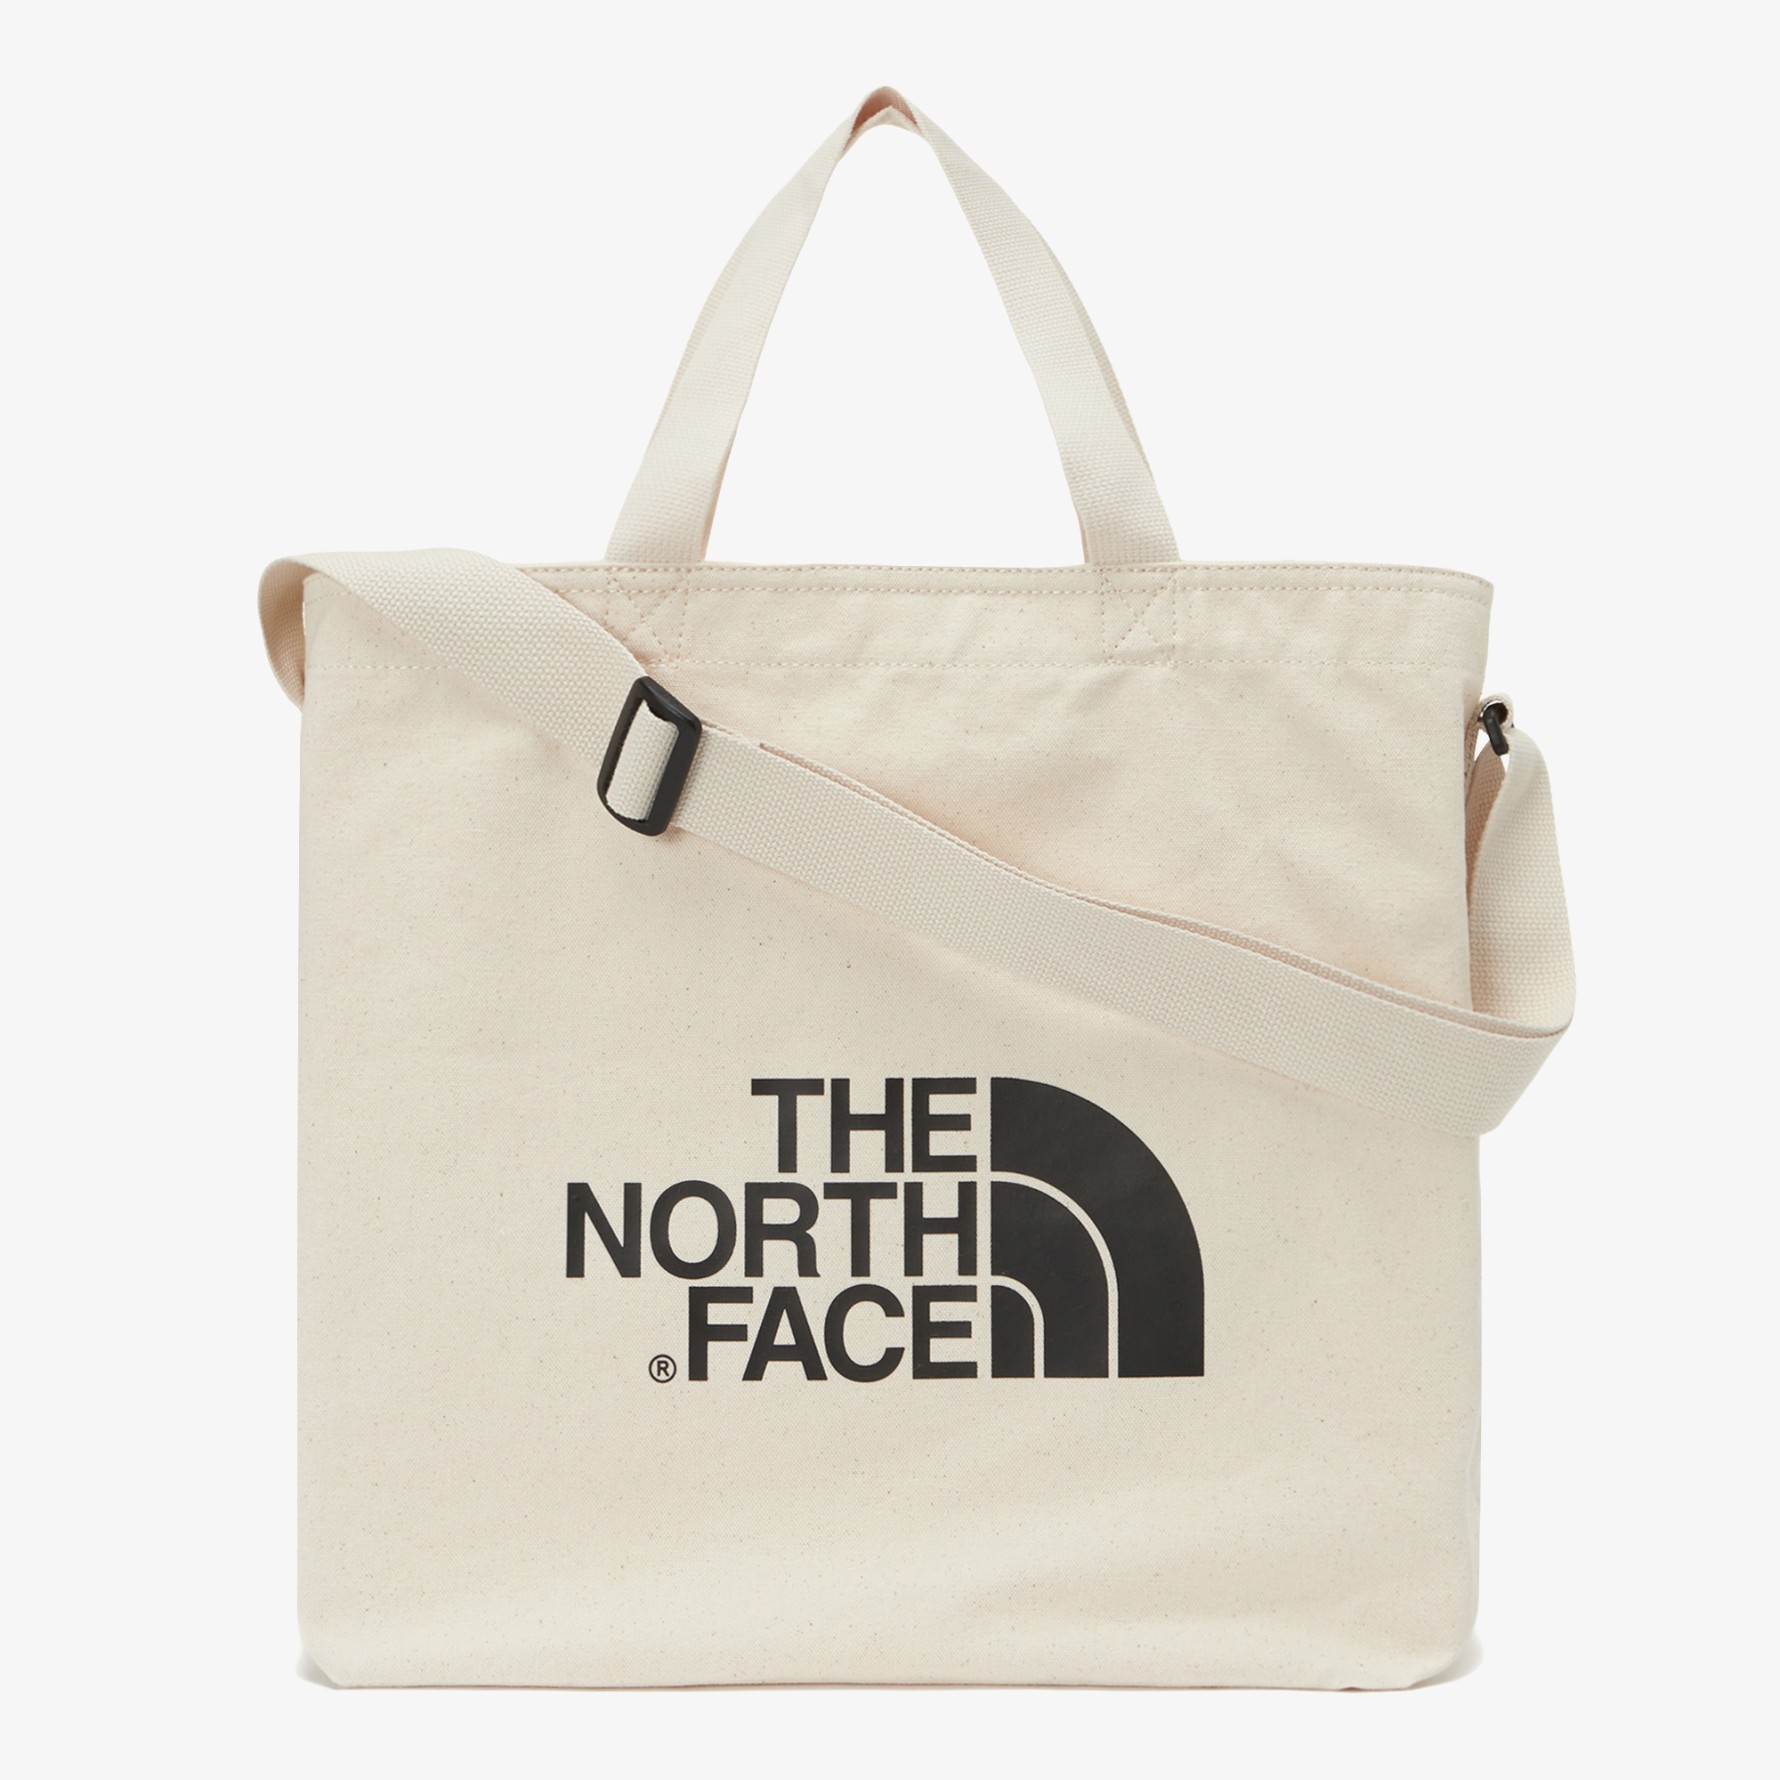 THE NORTH FACE - BIG LOGO SHOULDER BAG (IVORY)